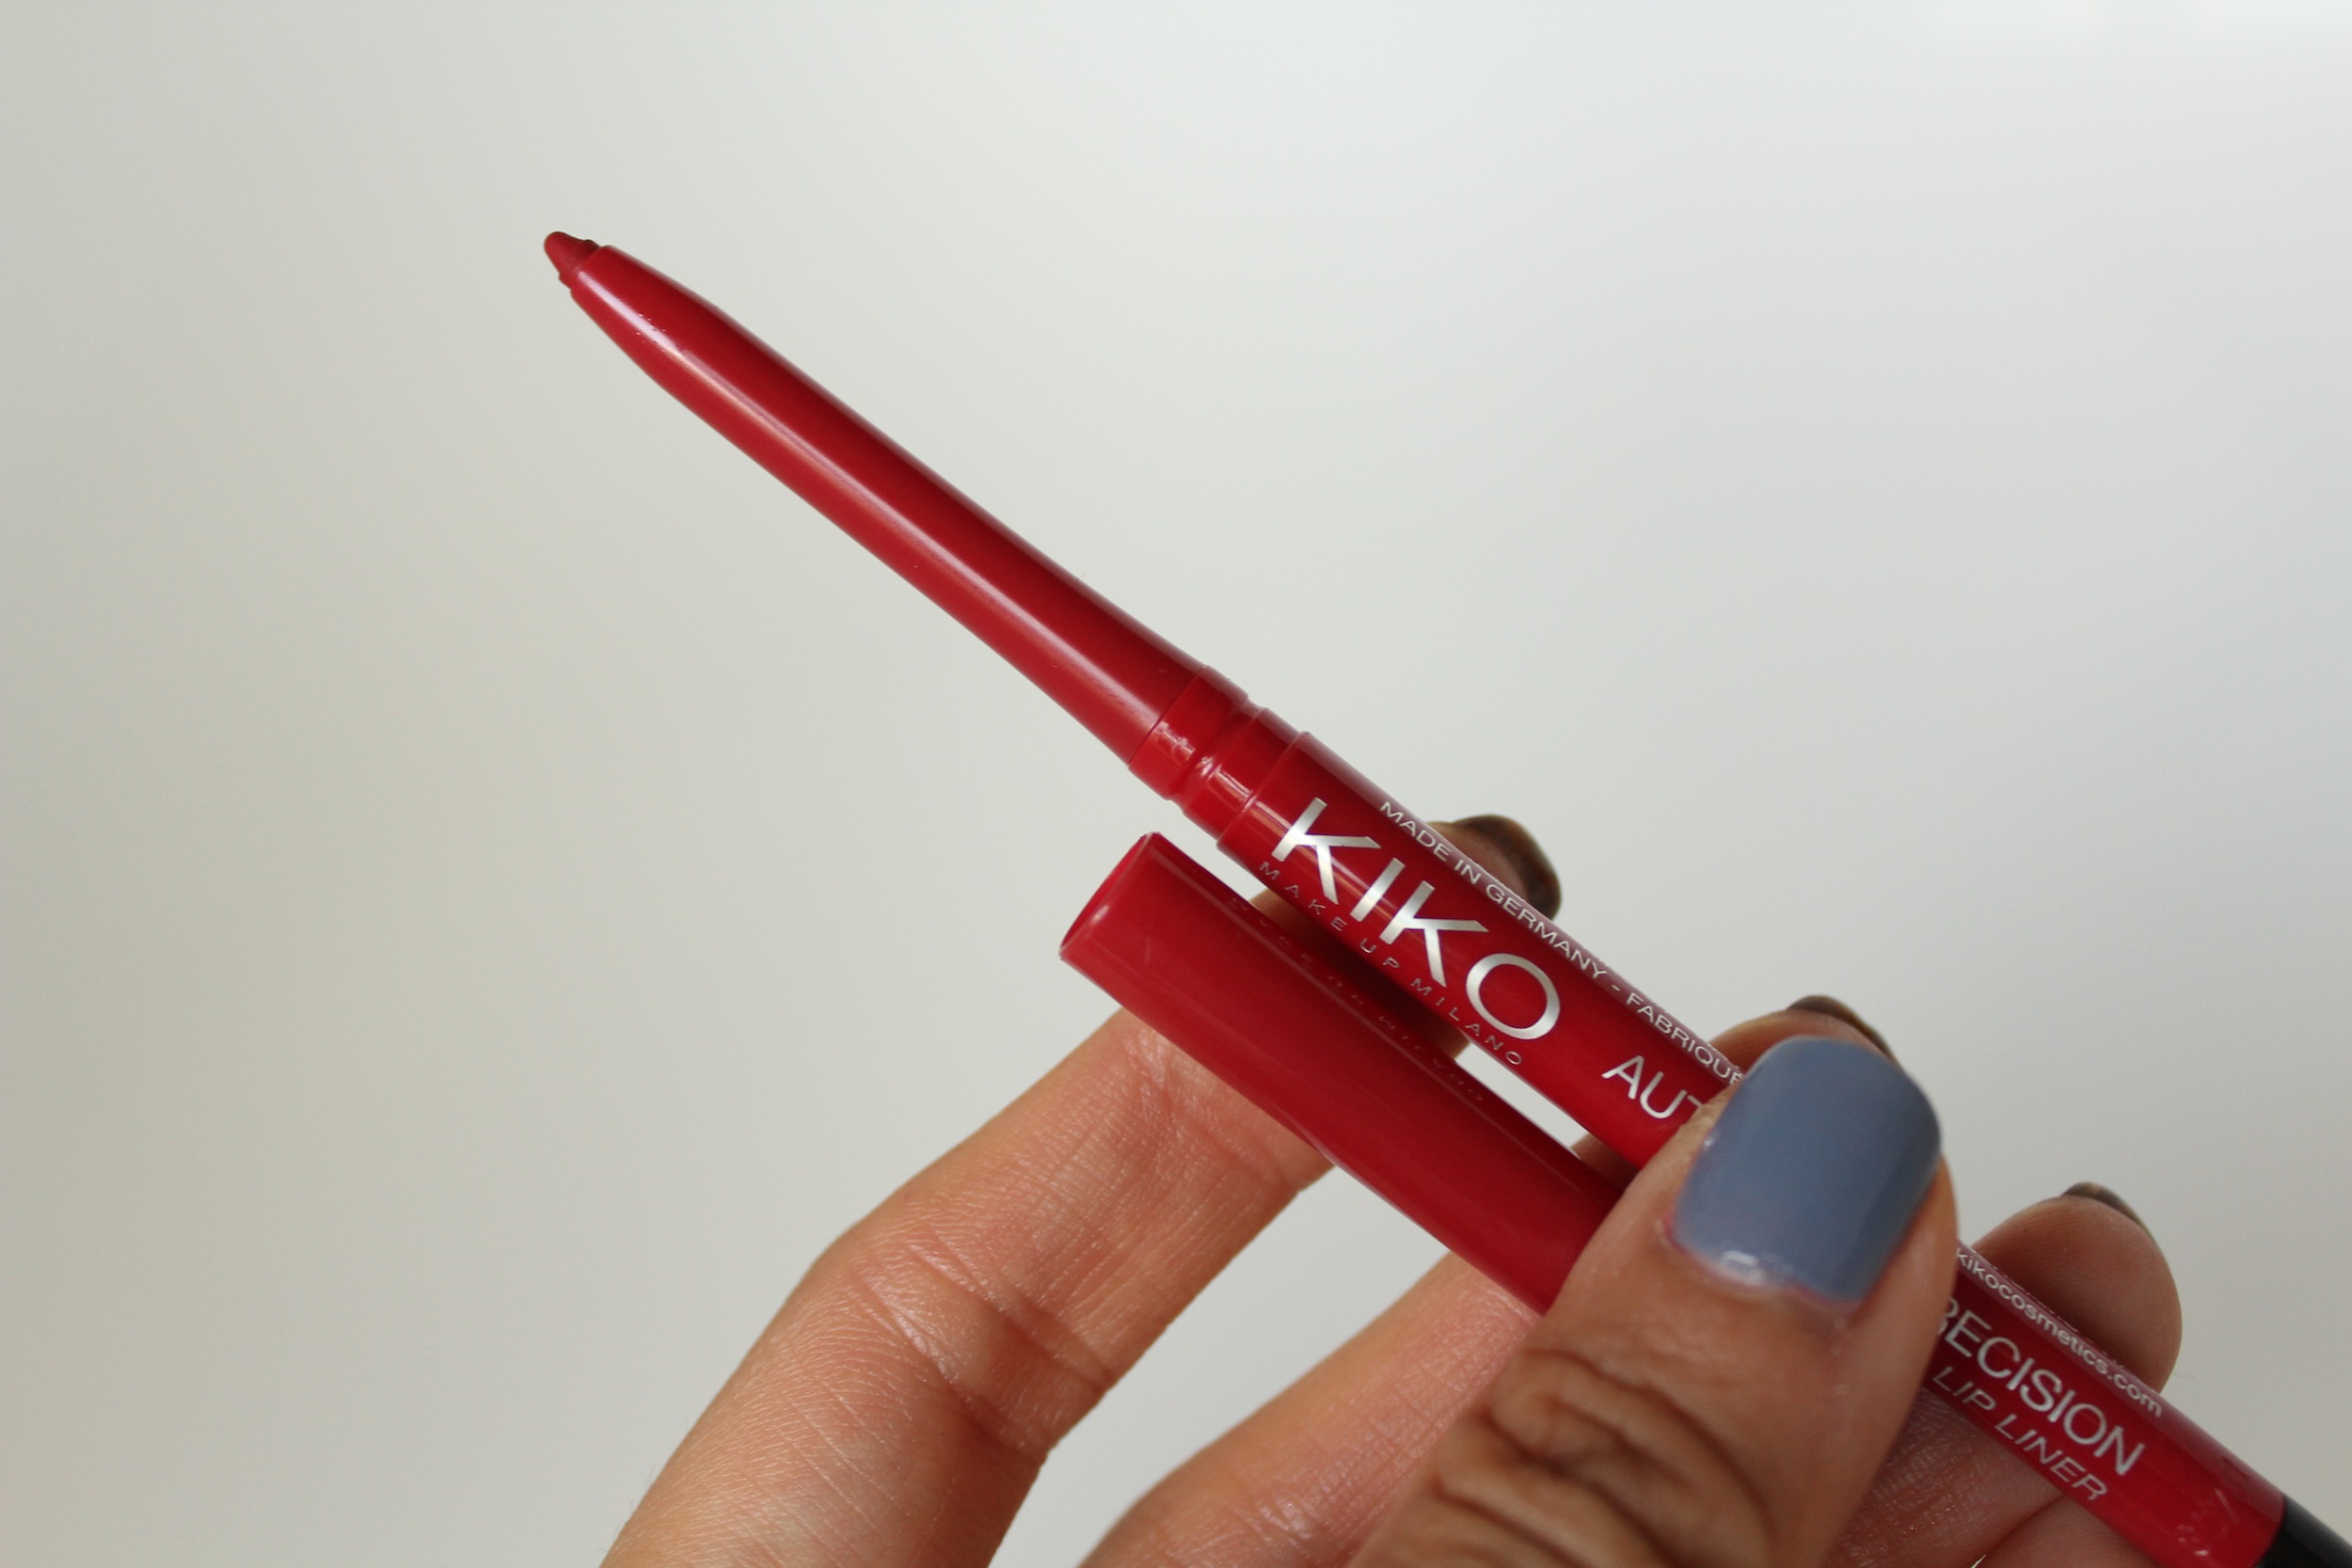 Kiko Automatic Precision Lip Liner in 505